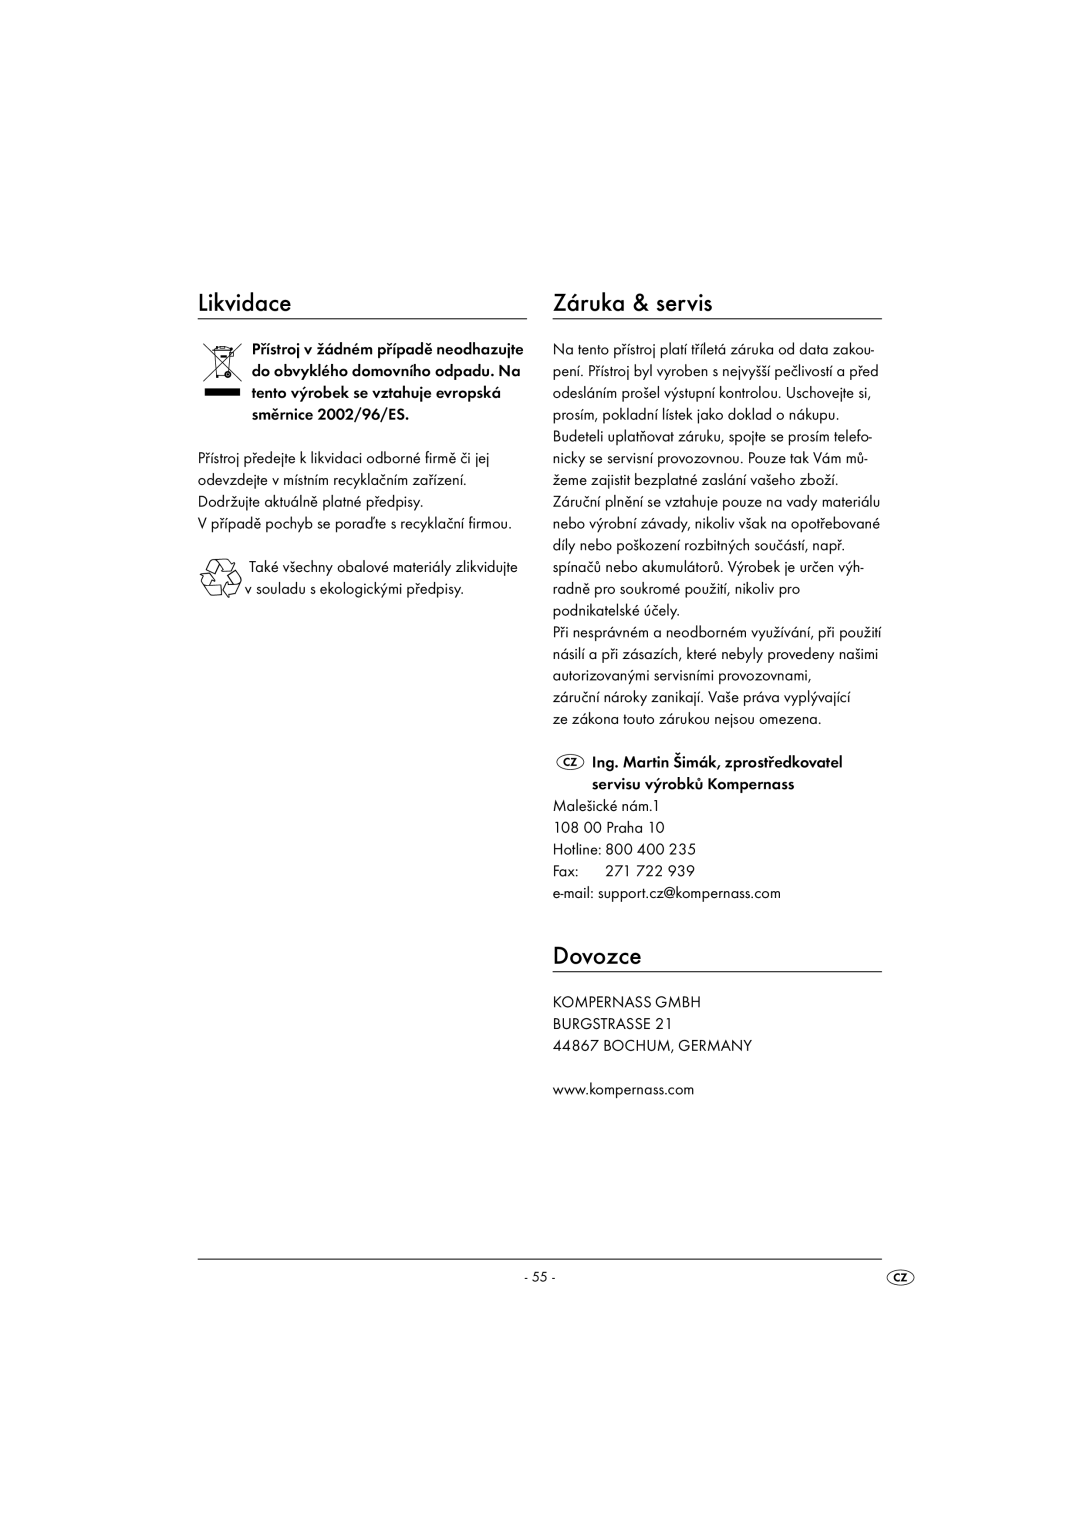 Kompernass KH 1099 manual Likvidace, Záruka & servis, Dovozce 